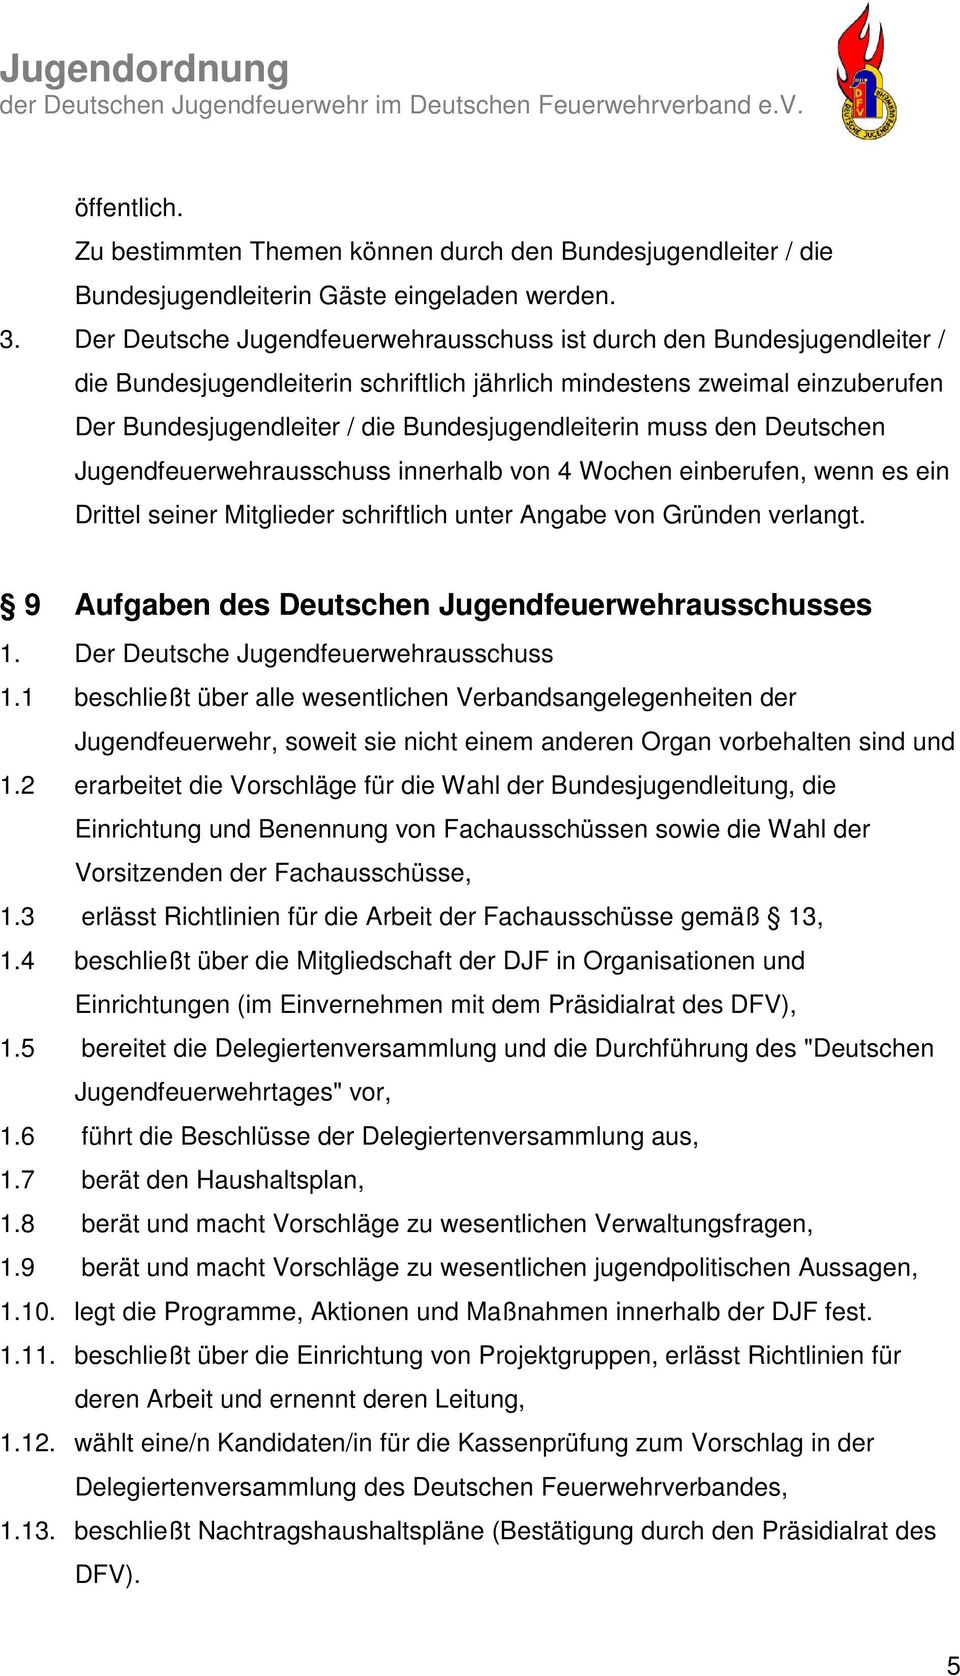 Bundesjugendleiterin muss den Deutschen Jugendfeuerwehrausschuss innerhalb von 4 Wochen einberufen, wenn es ein Drittel seiner Mitglieder schriftlich unter Angabe von Gründen verlangt.